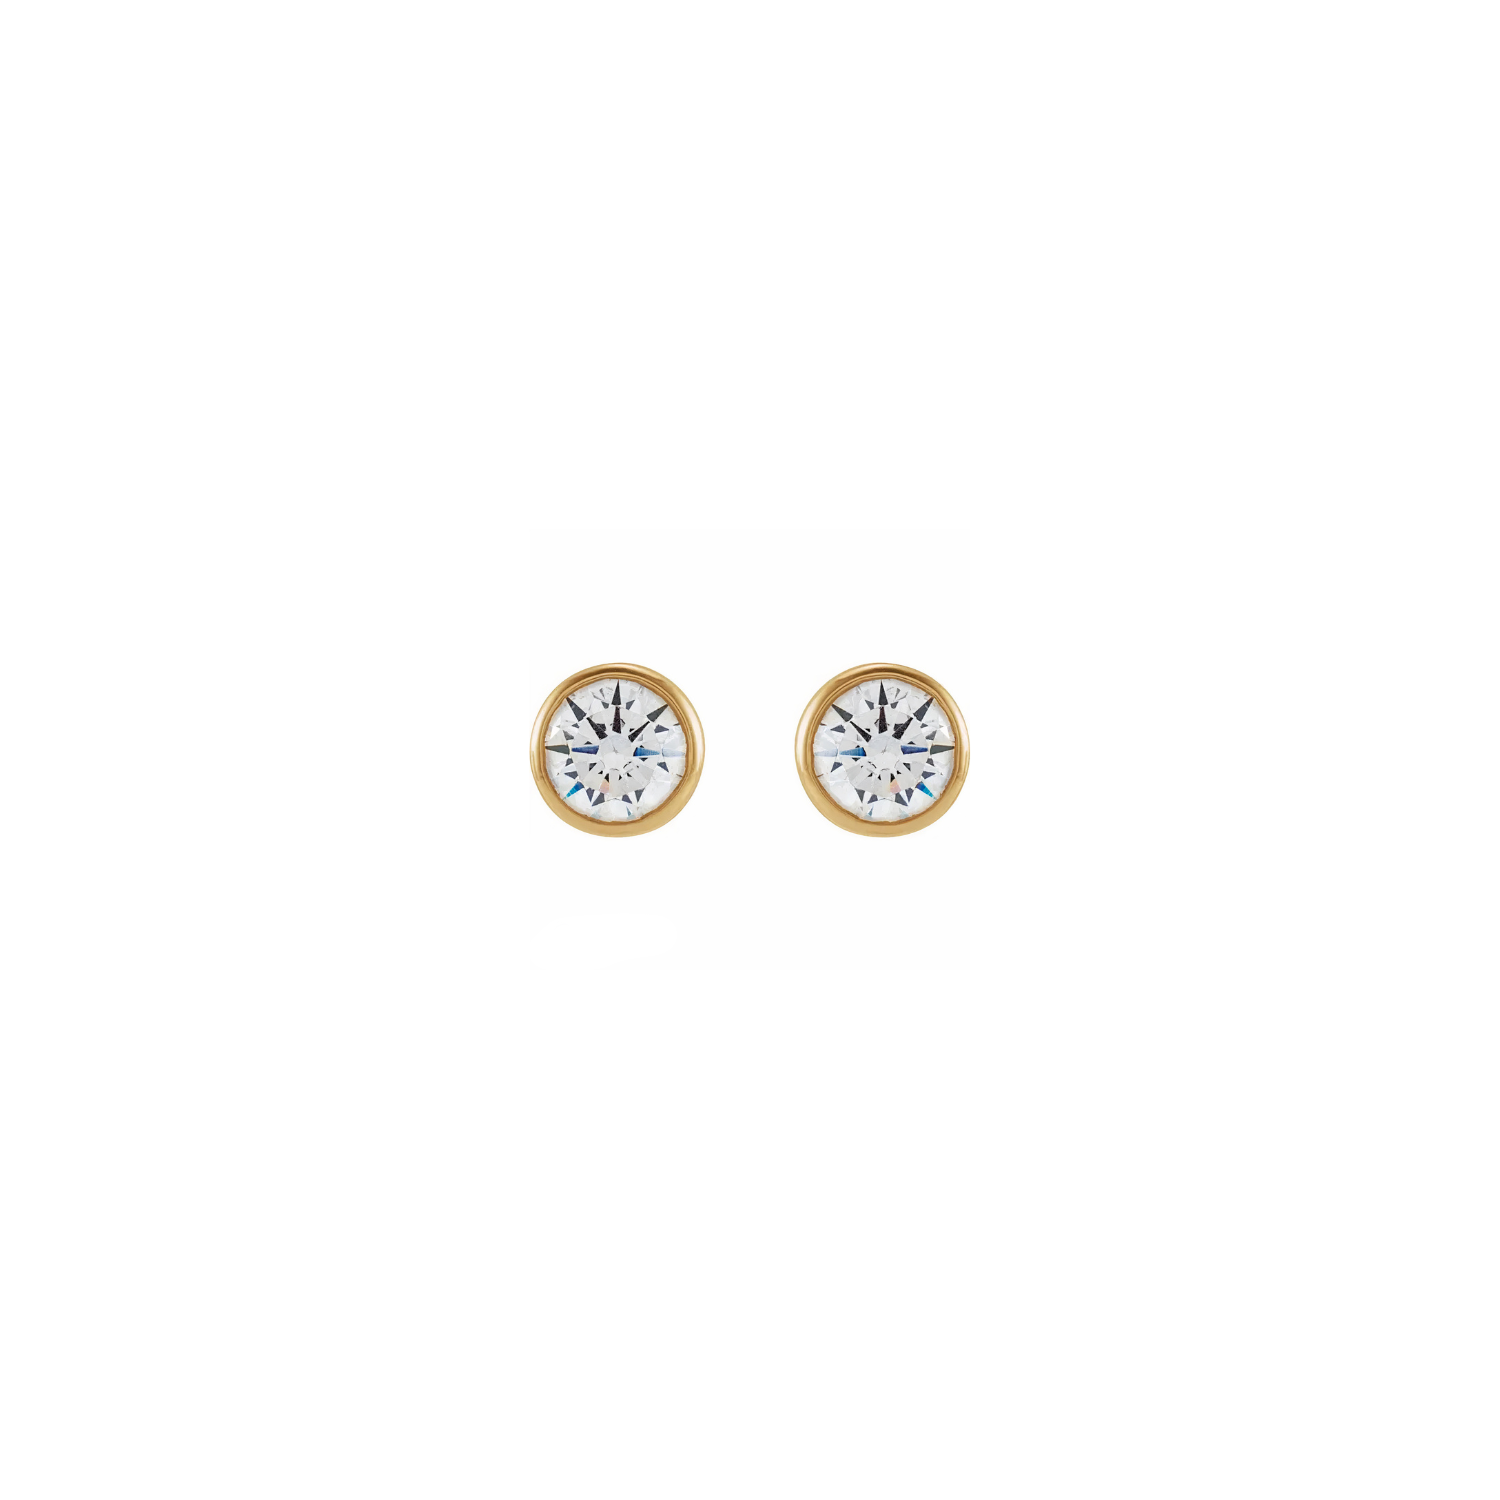 earrings, studs, diamond studs, bezel studs, 14k gold earrings, gifts, jewelry